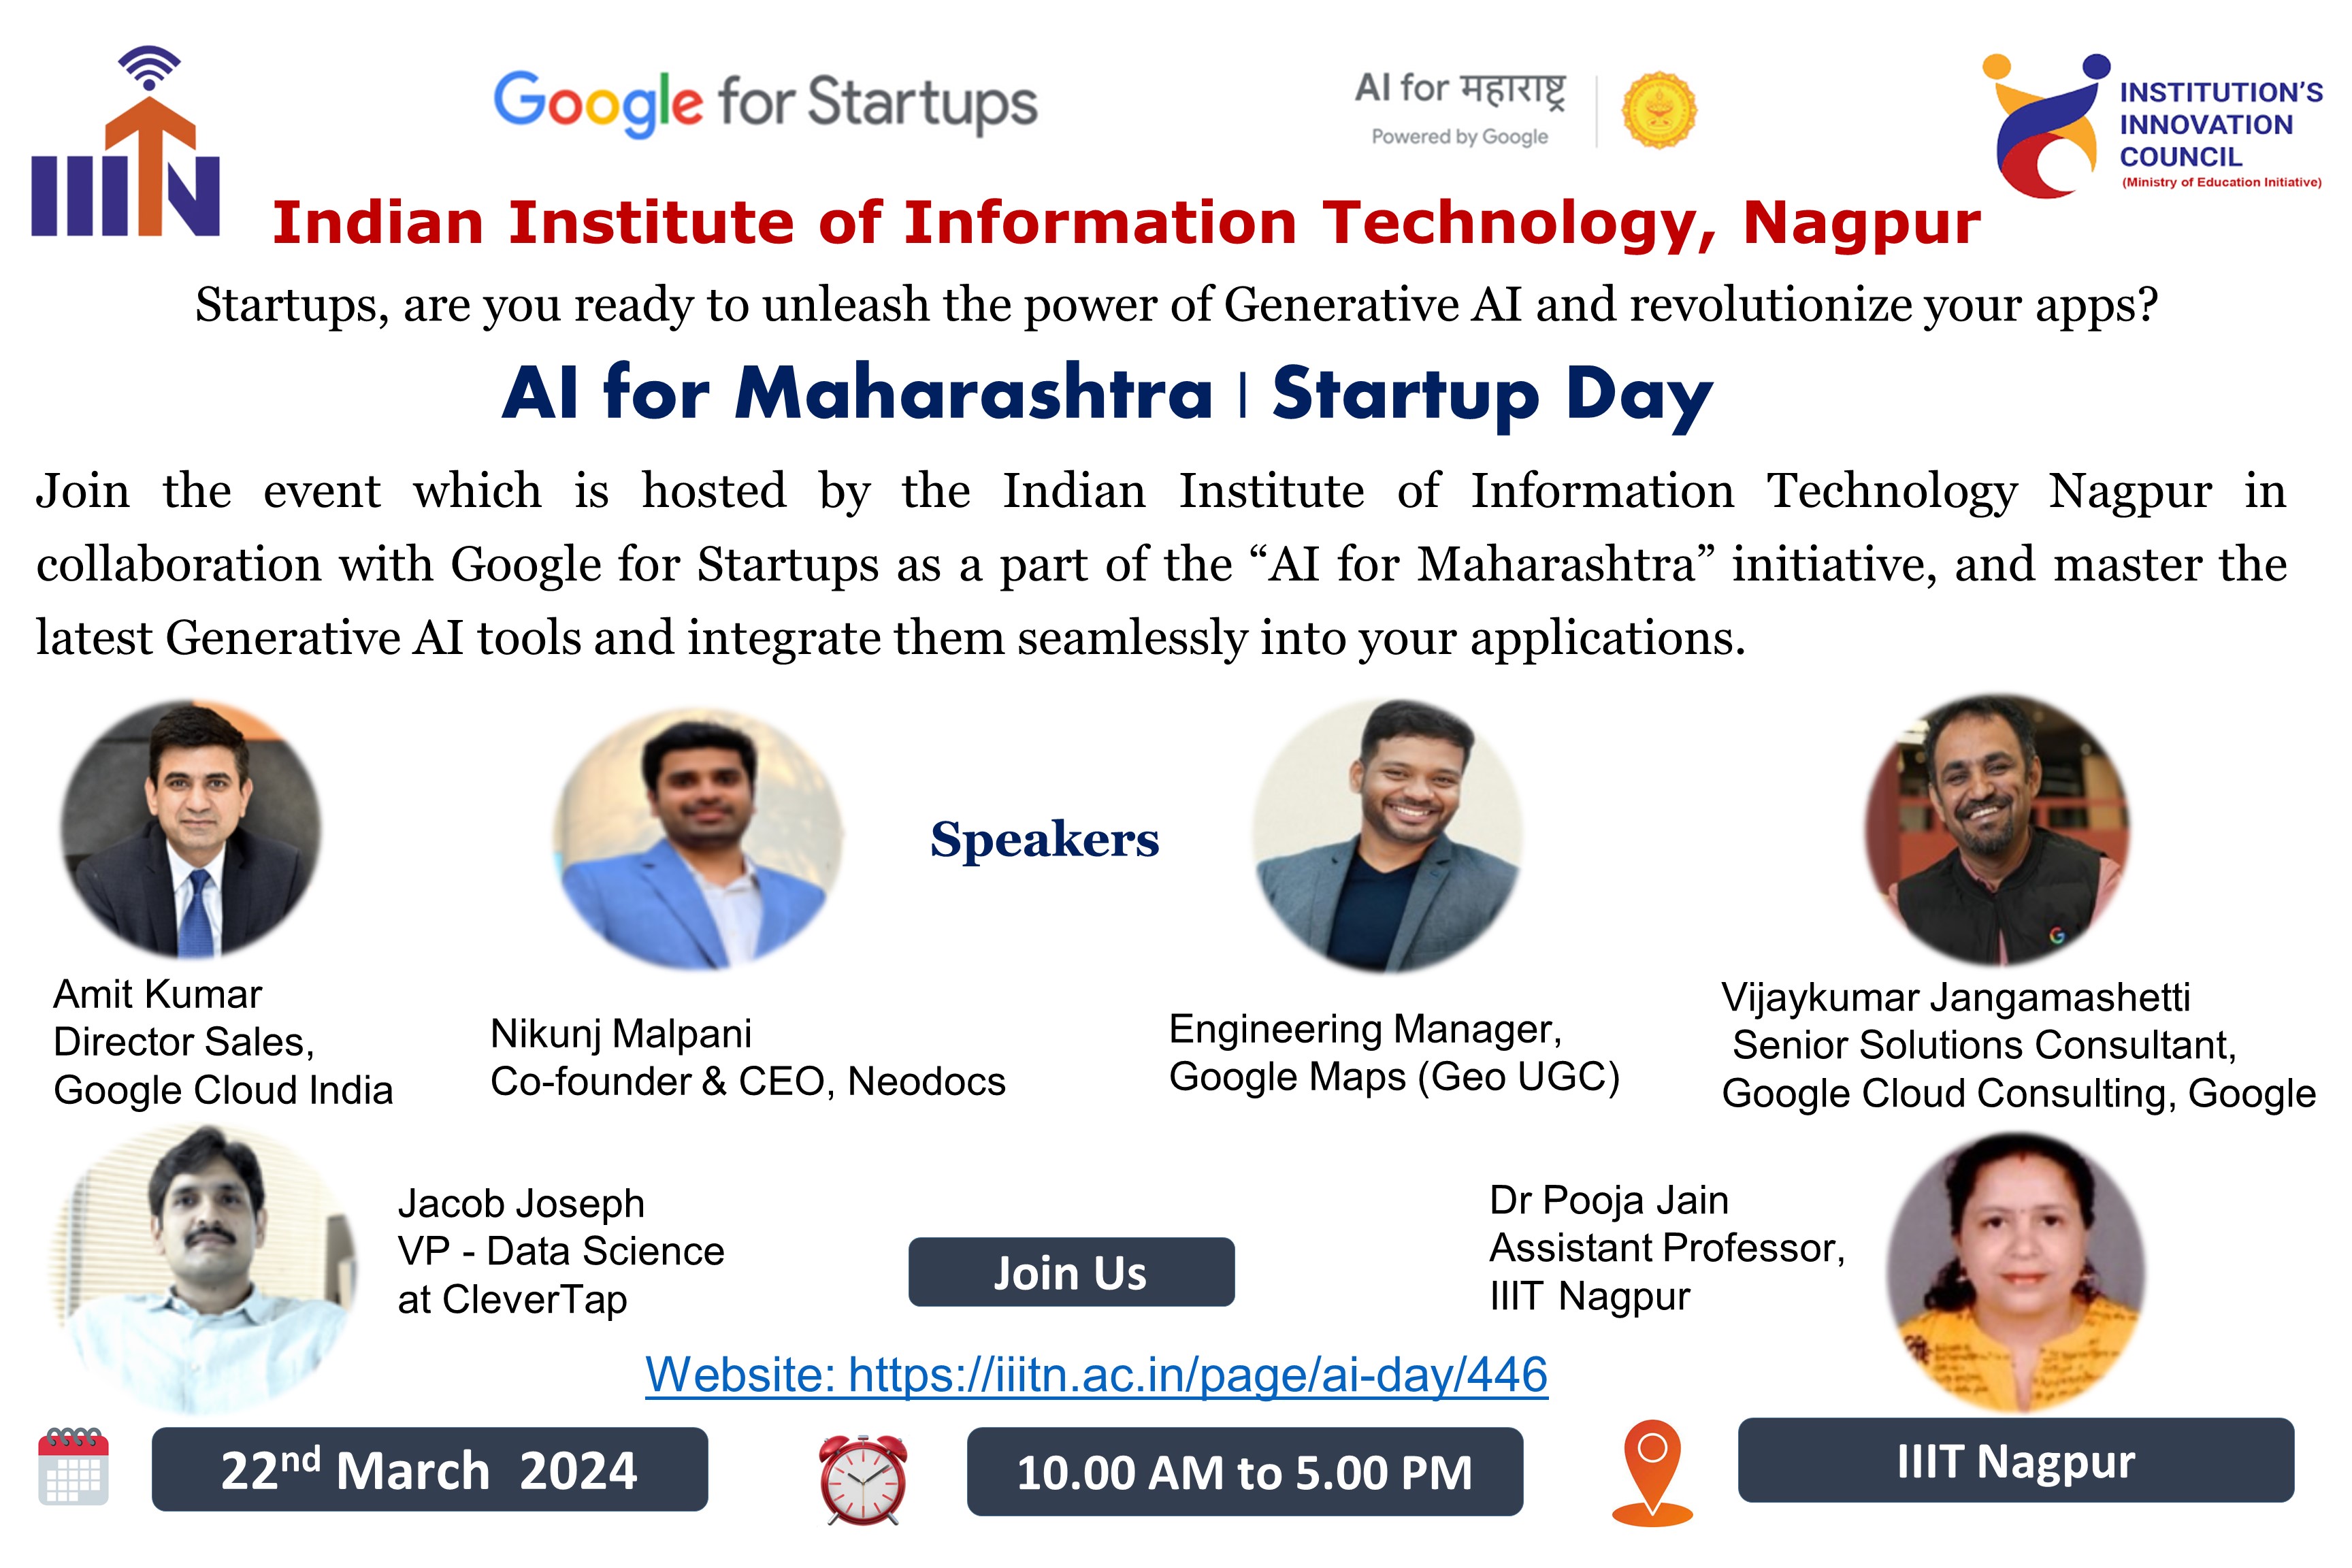 AI for Maharashtra